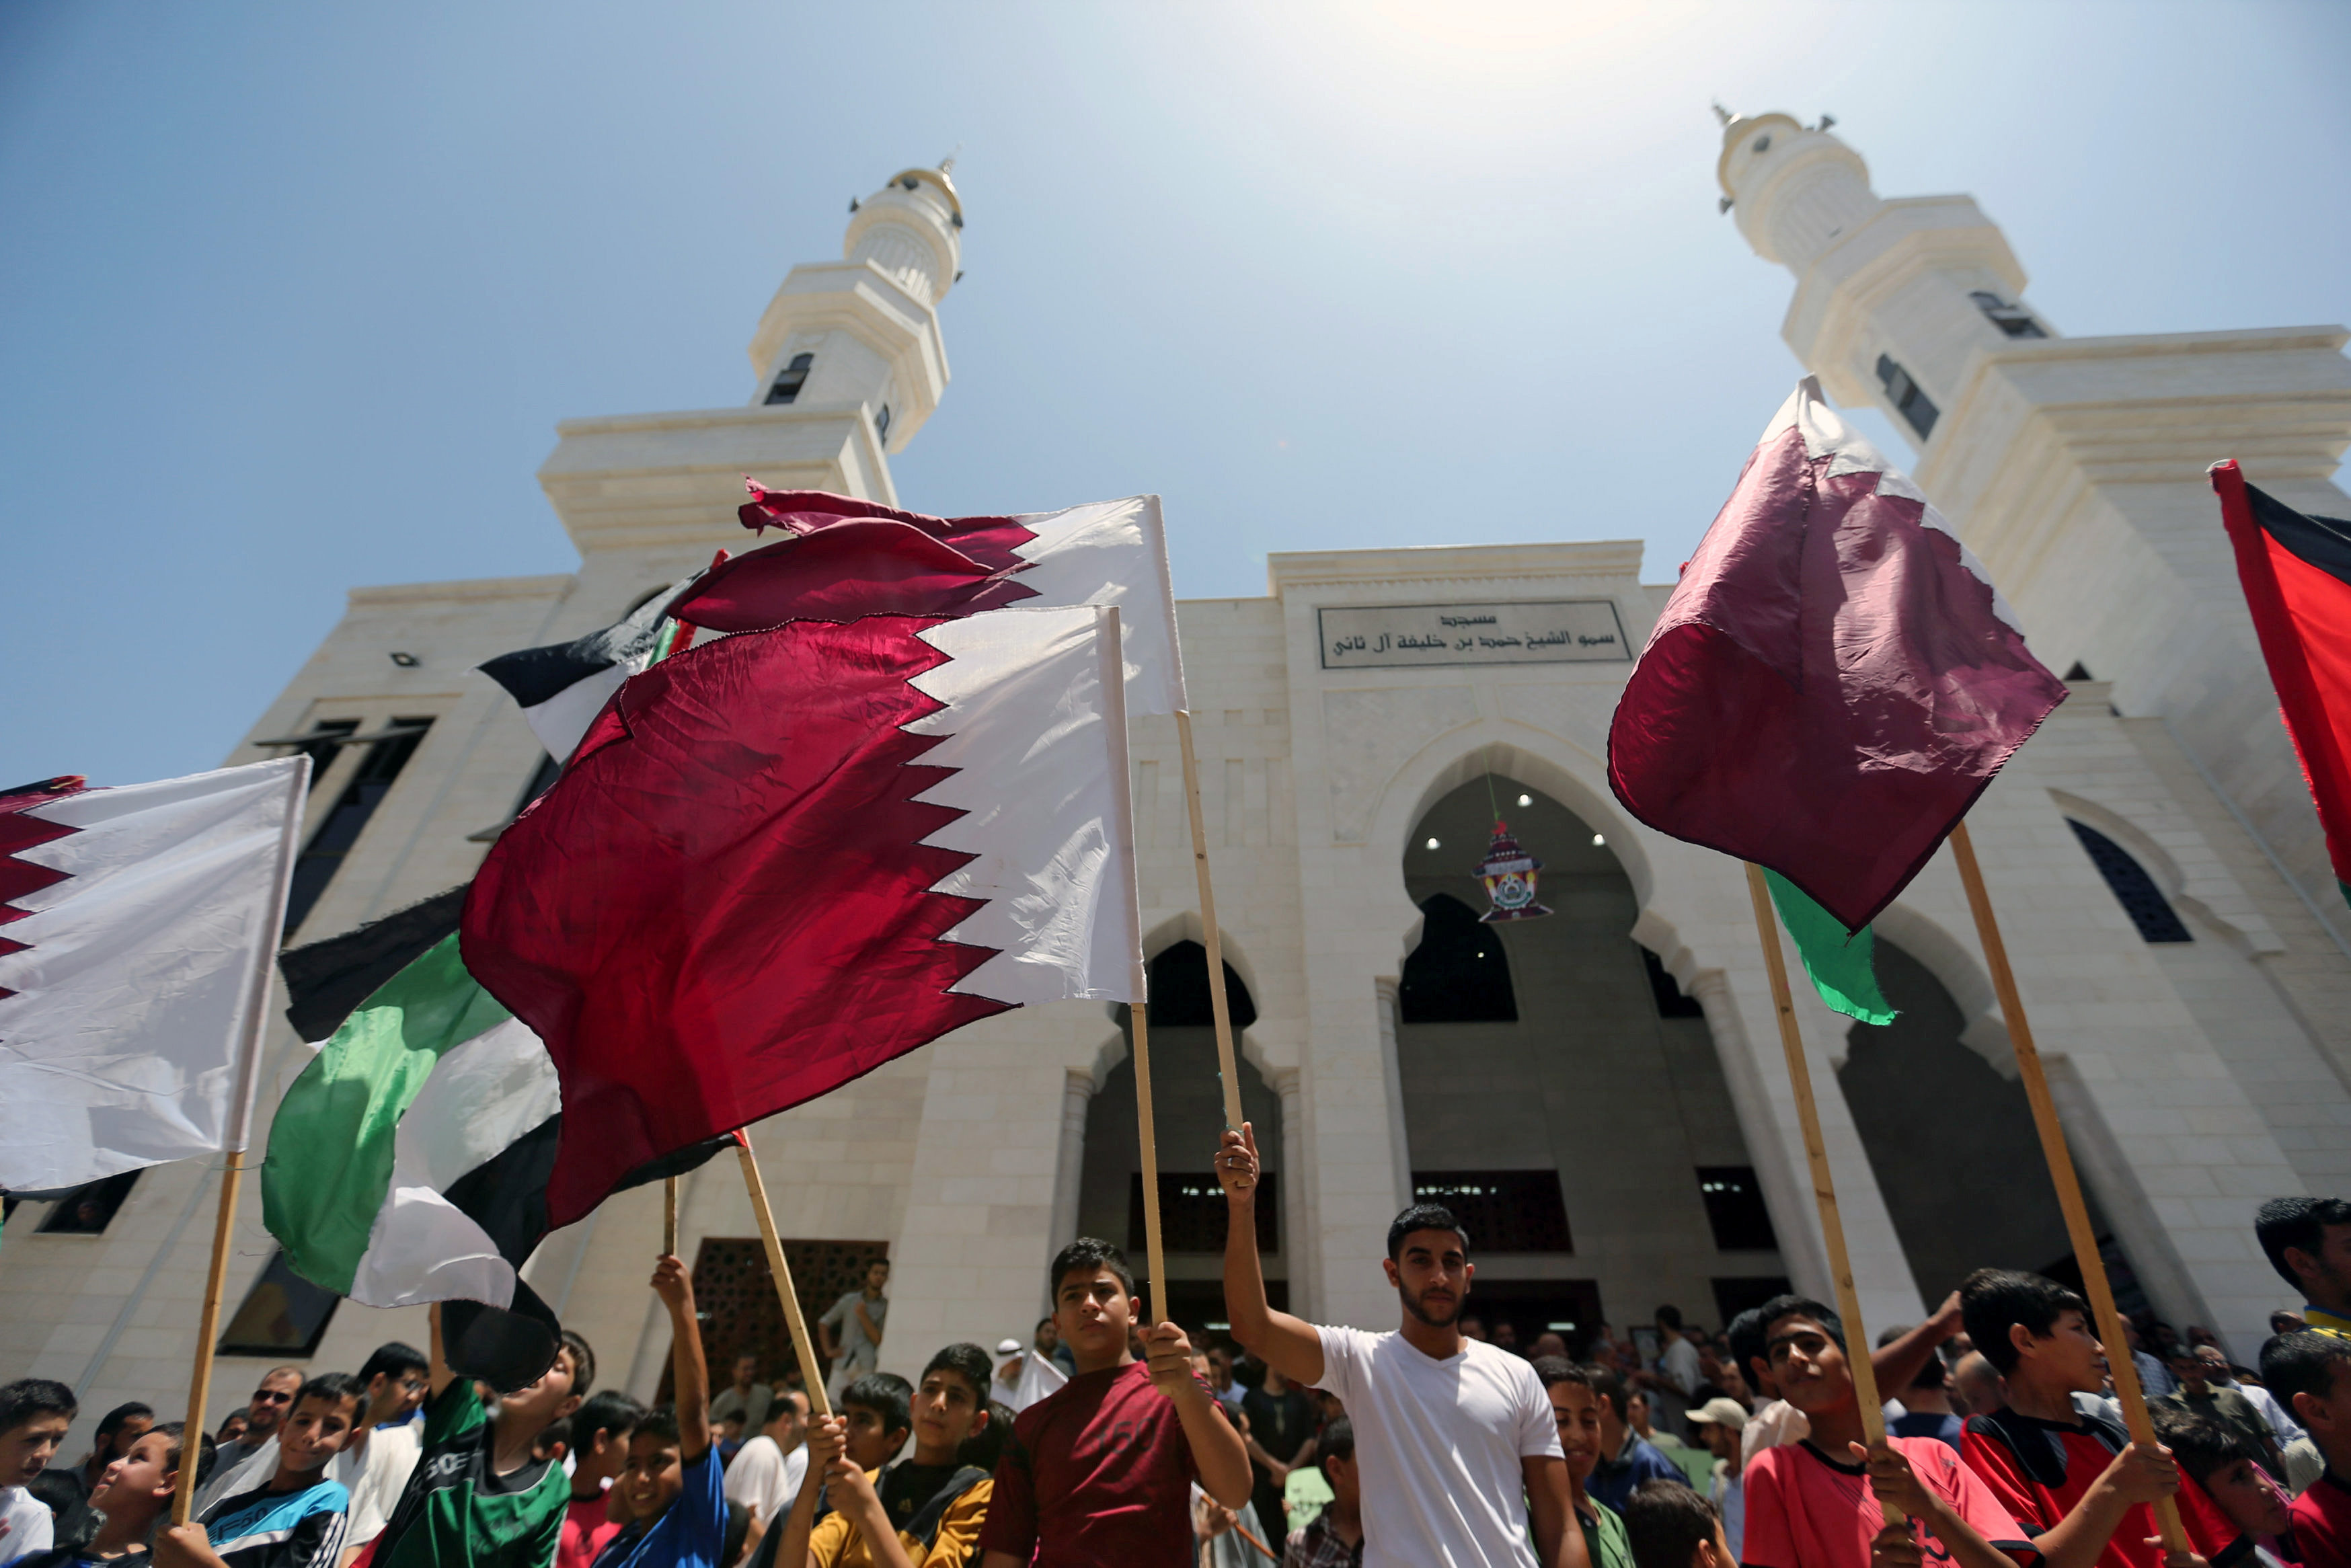 Khủng hoảng ngoại giao giữa Qatar và Bahrain đã được giải quyết một cách tích cực sau nhiều tháng bất đồng. Sự hàn gắn này đã mang lại nhiều lợi ích cho cả hai quốc gia và khu vực Trung Đông nói chung. Hãy xem ảnh liên quan để tìm hiểu thêm về những đóng góp tích cực của Qatar và Bahrain để đảm bảo sự ổn định và hòa bình trong khu vực.